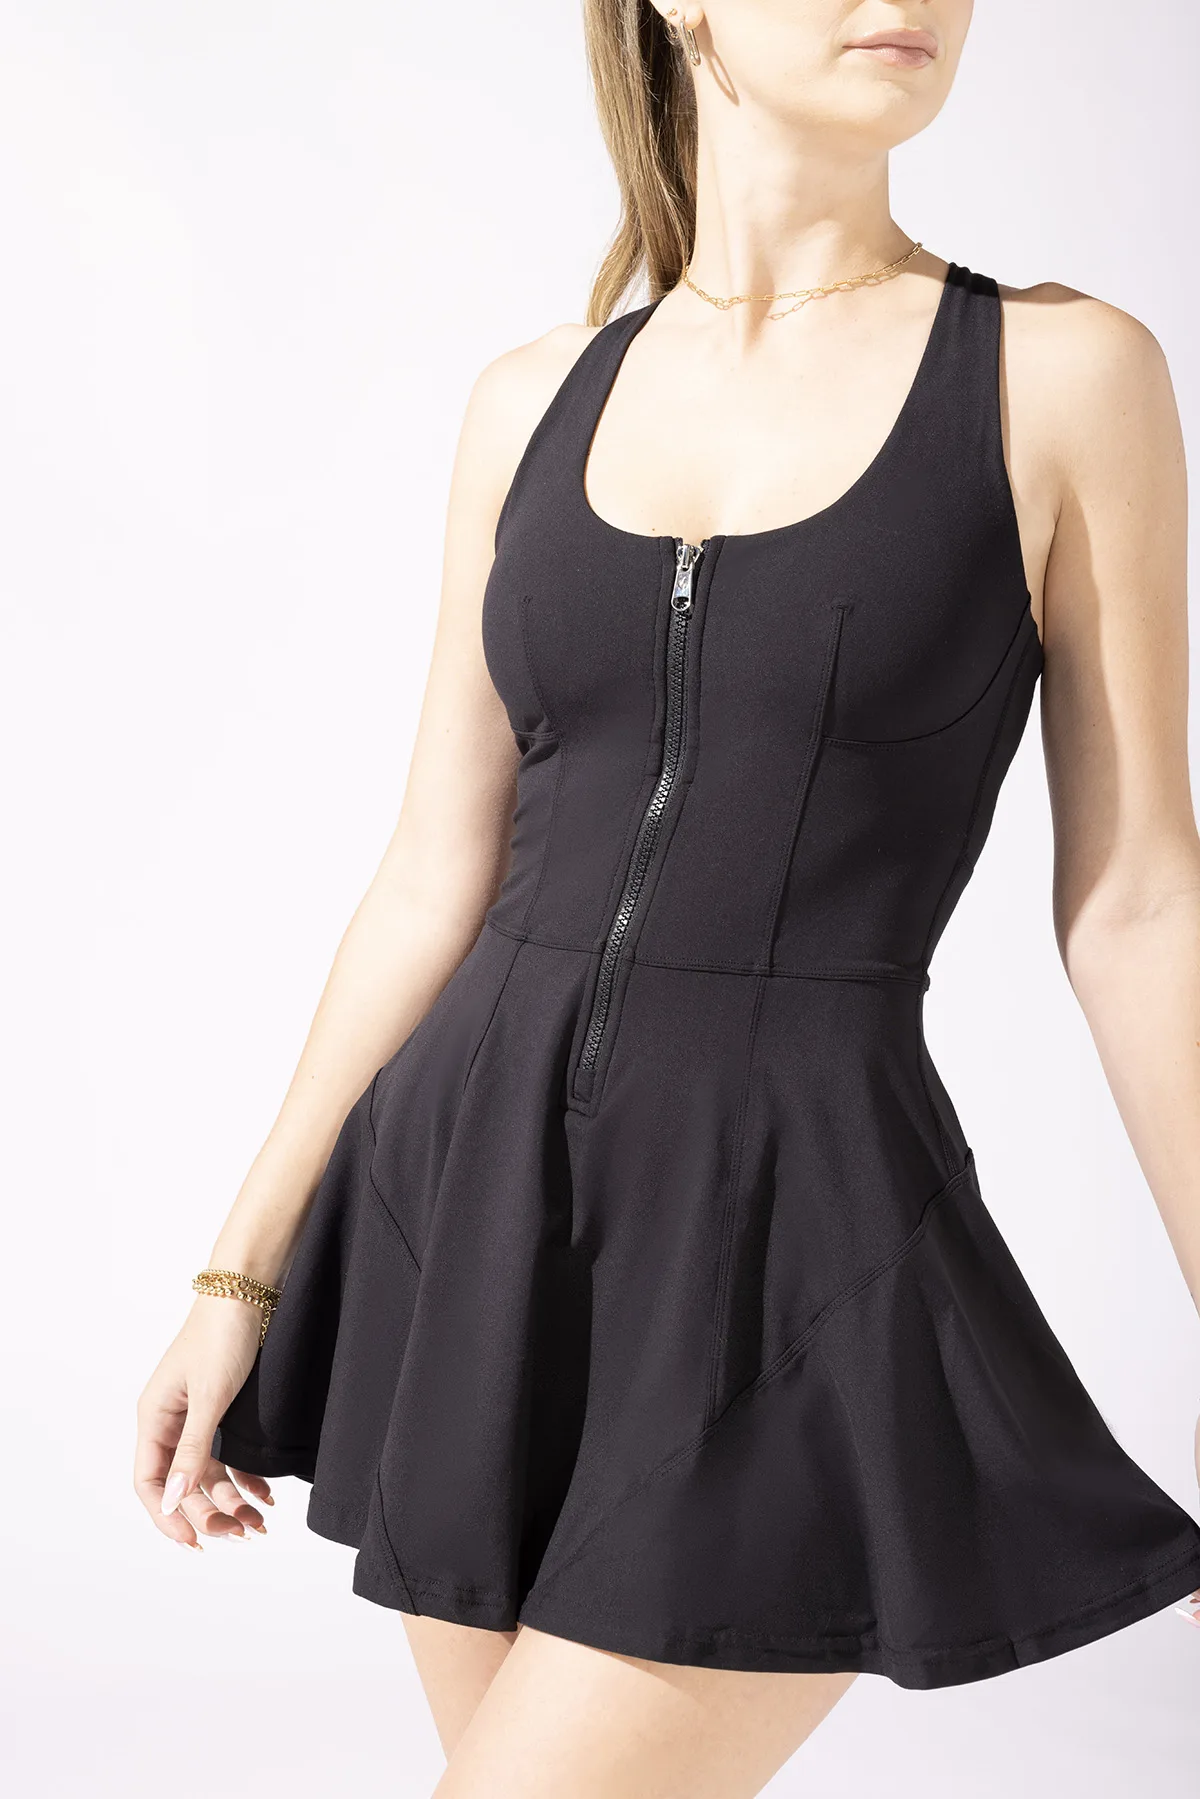 popflex matchpoint zipper dress black pickleball dress workout